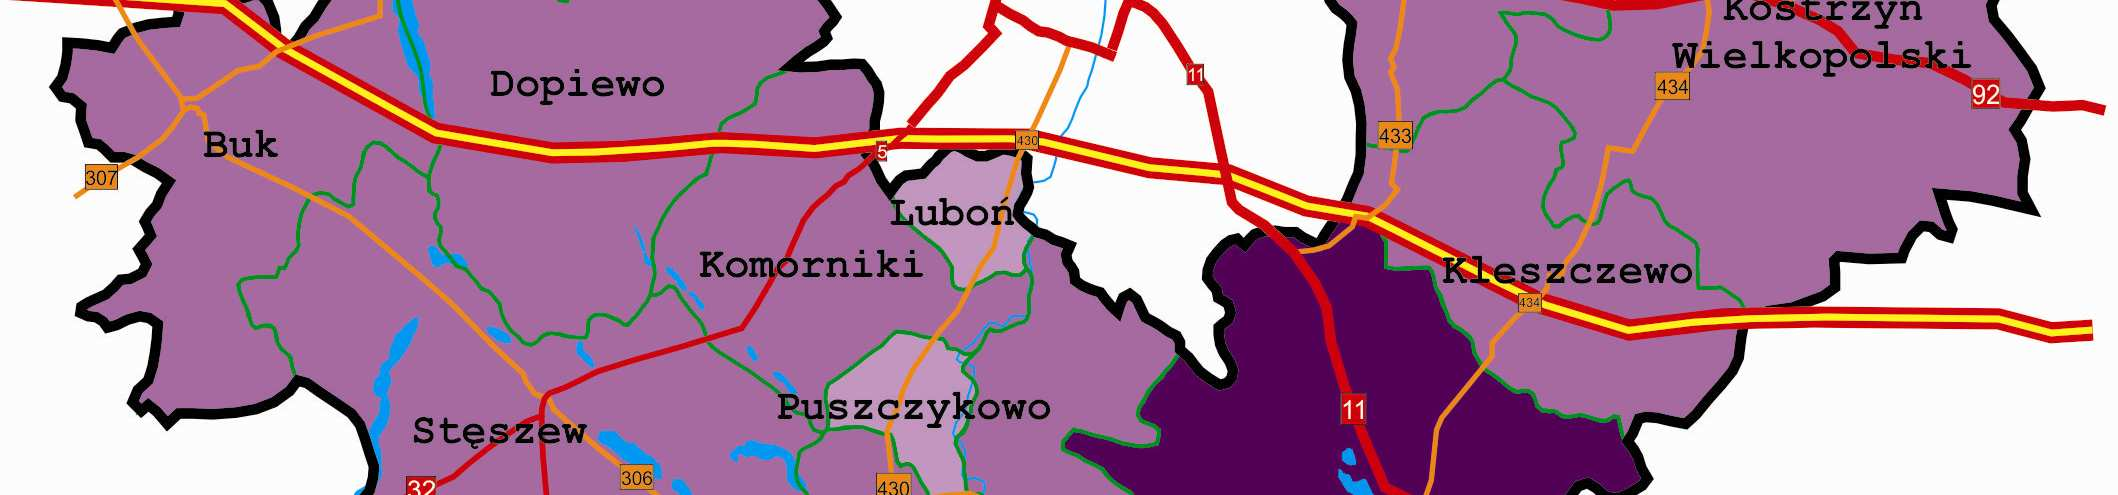 transakcji zanotowano w gminach Buk, Puszczykowo i Luboń (poniżej 3%).